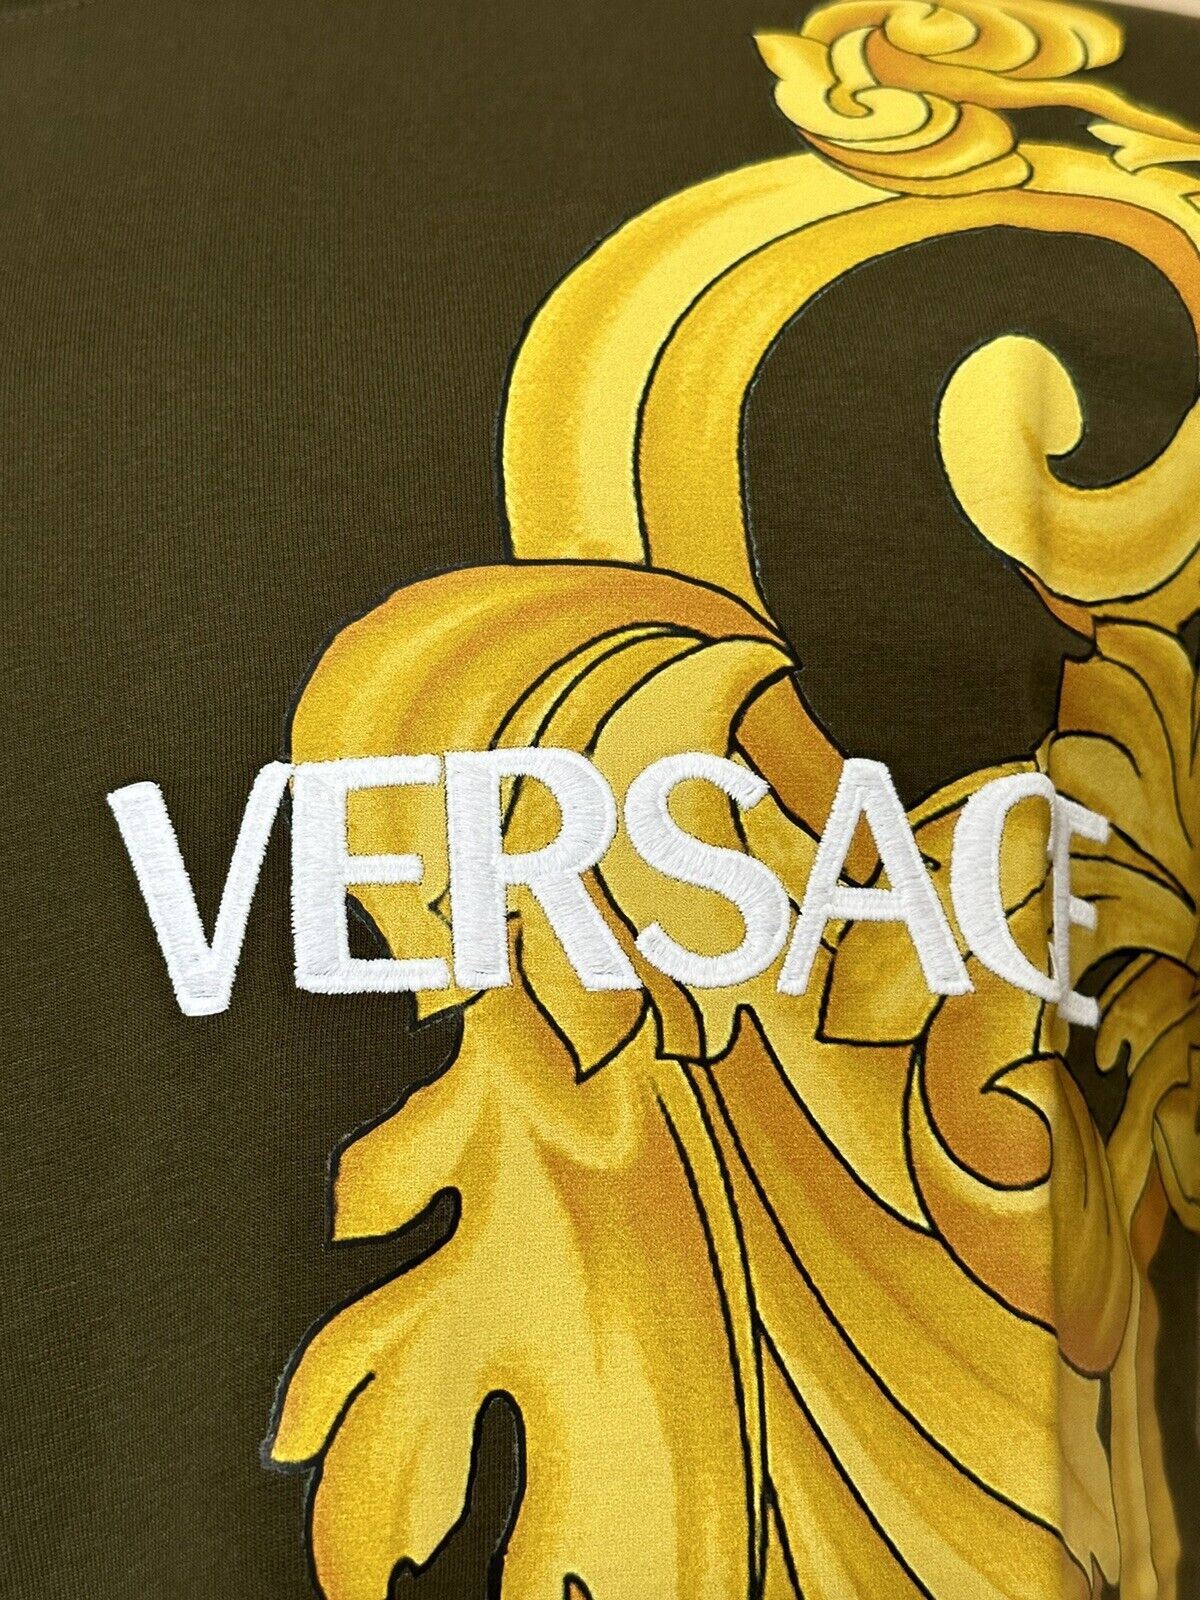 Neu mit Etikett: Versace gesticktes Versace-Logo, Khaki-Jersey-T-Shirt 2XL 1008280